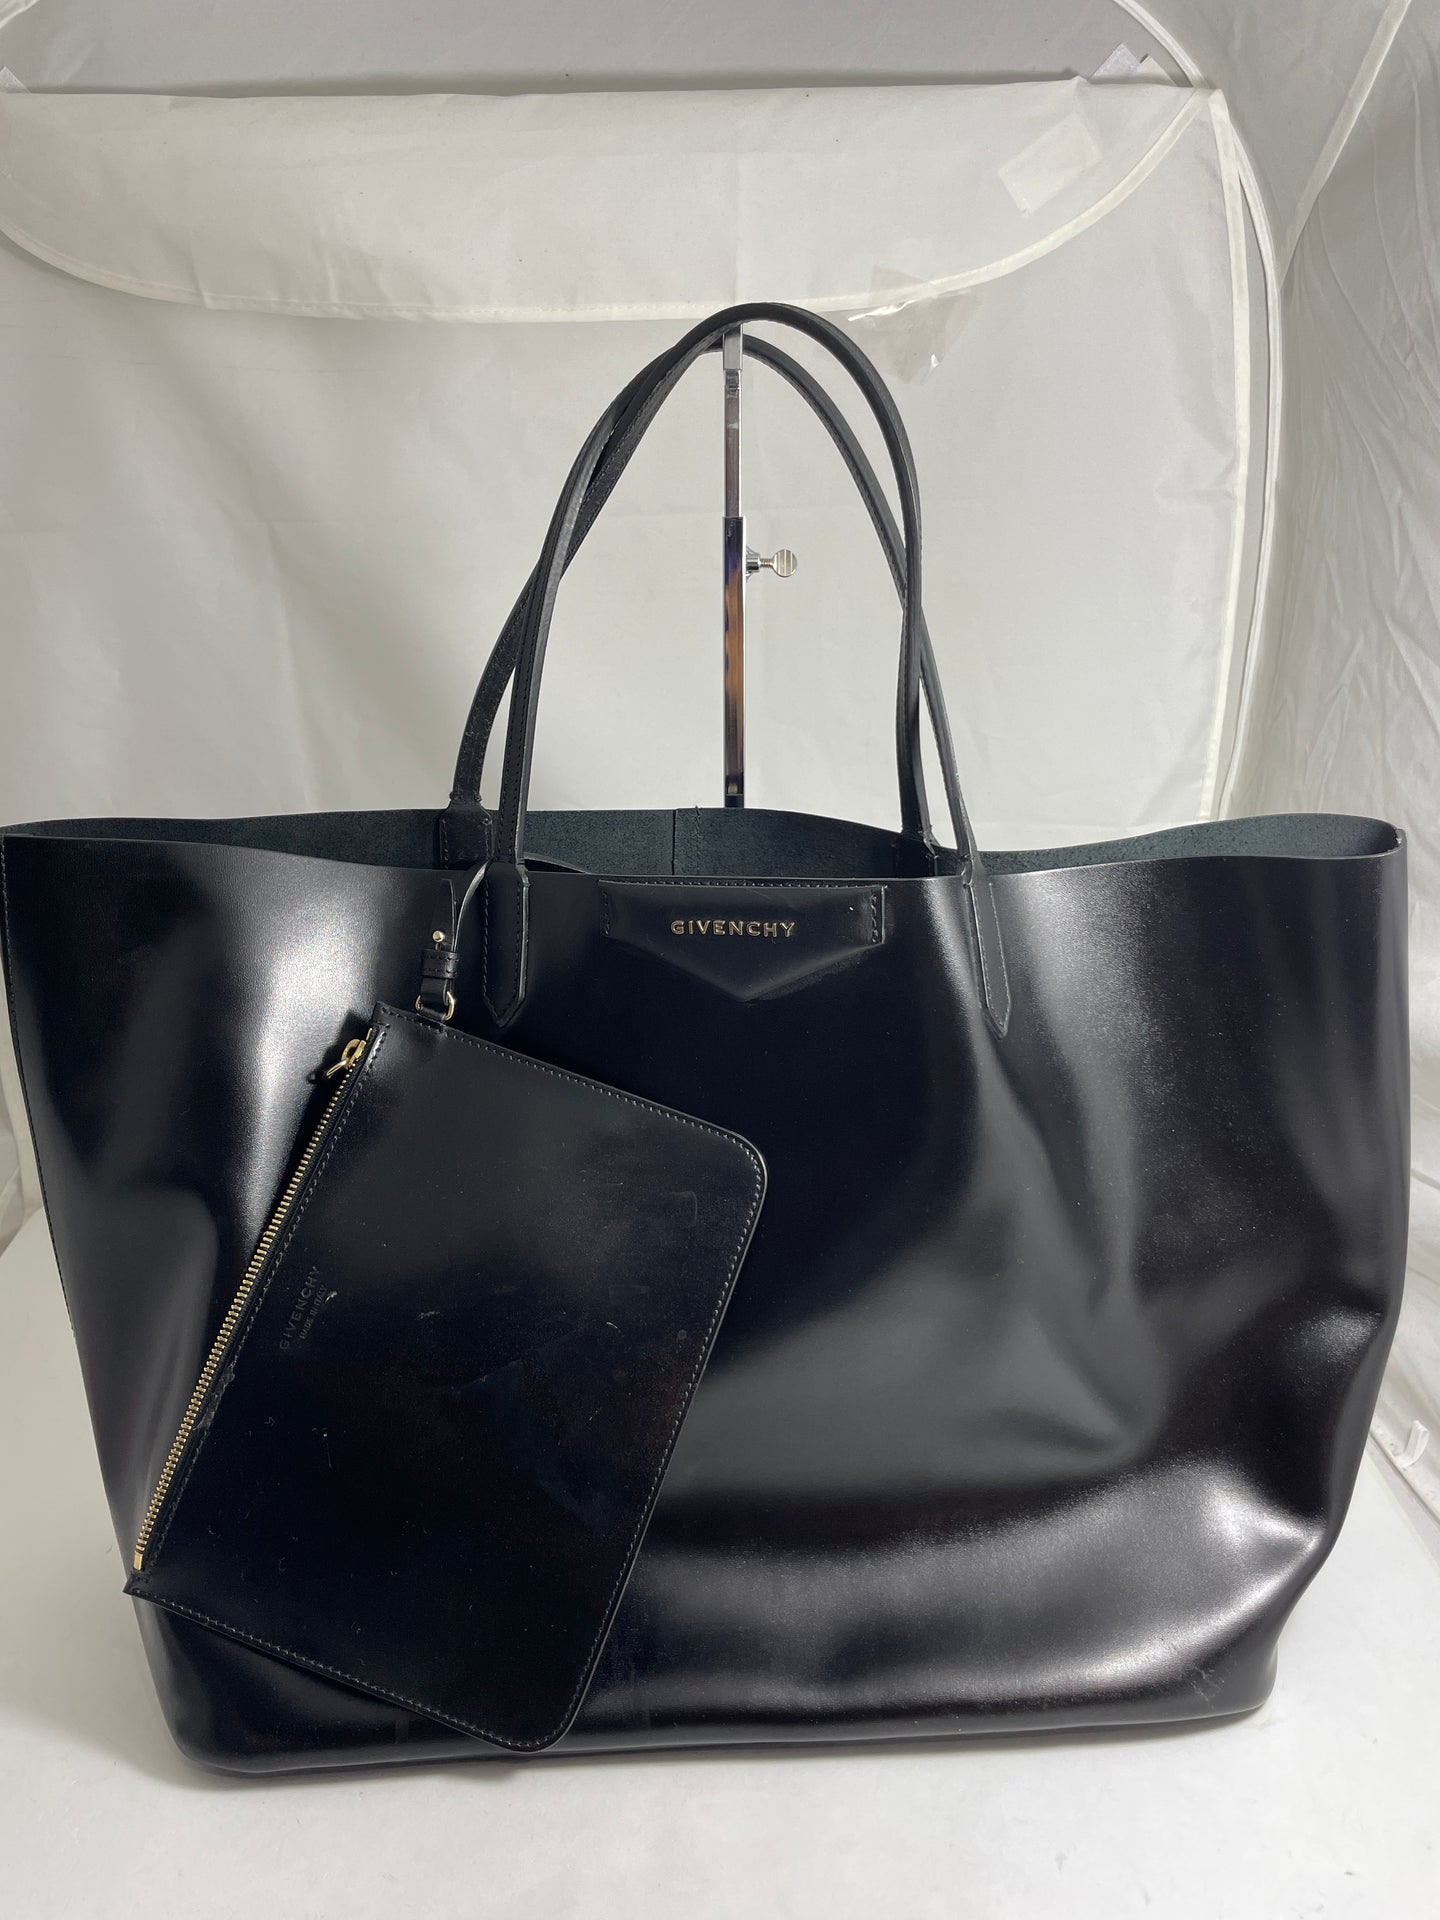 Givenchy Antigona Large Black Leather Tote